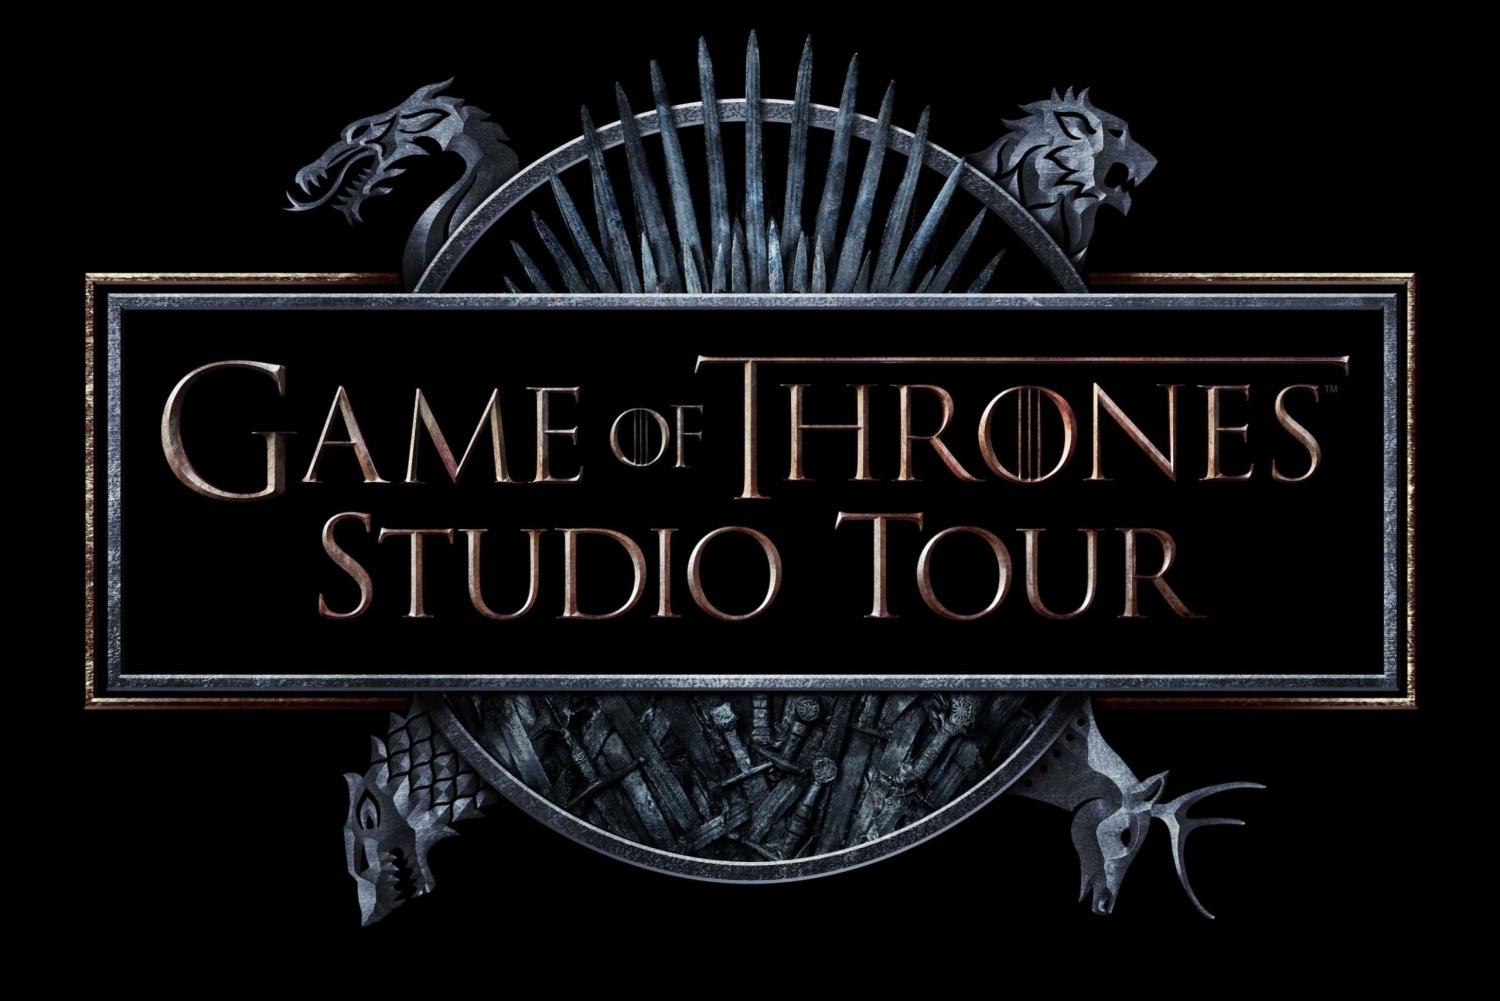 Game of Thrones Studio Tour Admission Ticket